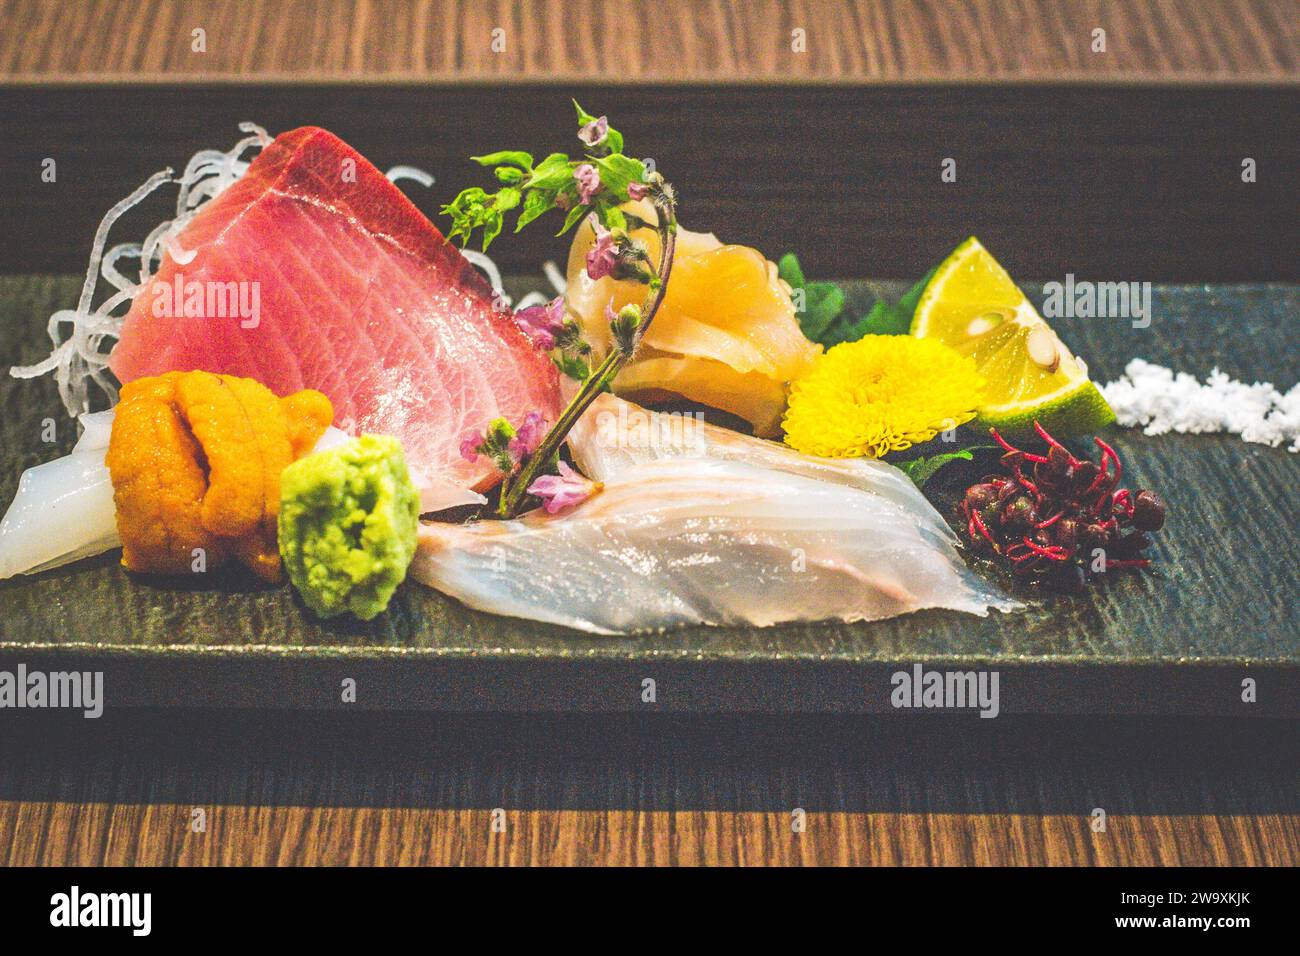 Ein Gericht mit rohem Sashimi-Fisch einschließlich Thunfisch, Tintenfisch, Uni, Seeigel, Wasabi und essbaren Blumen Stockfoto